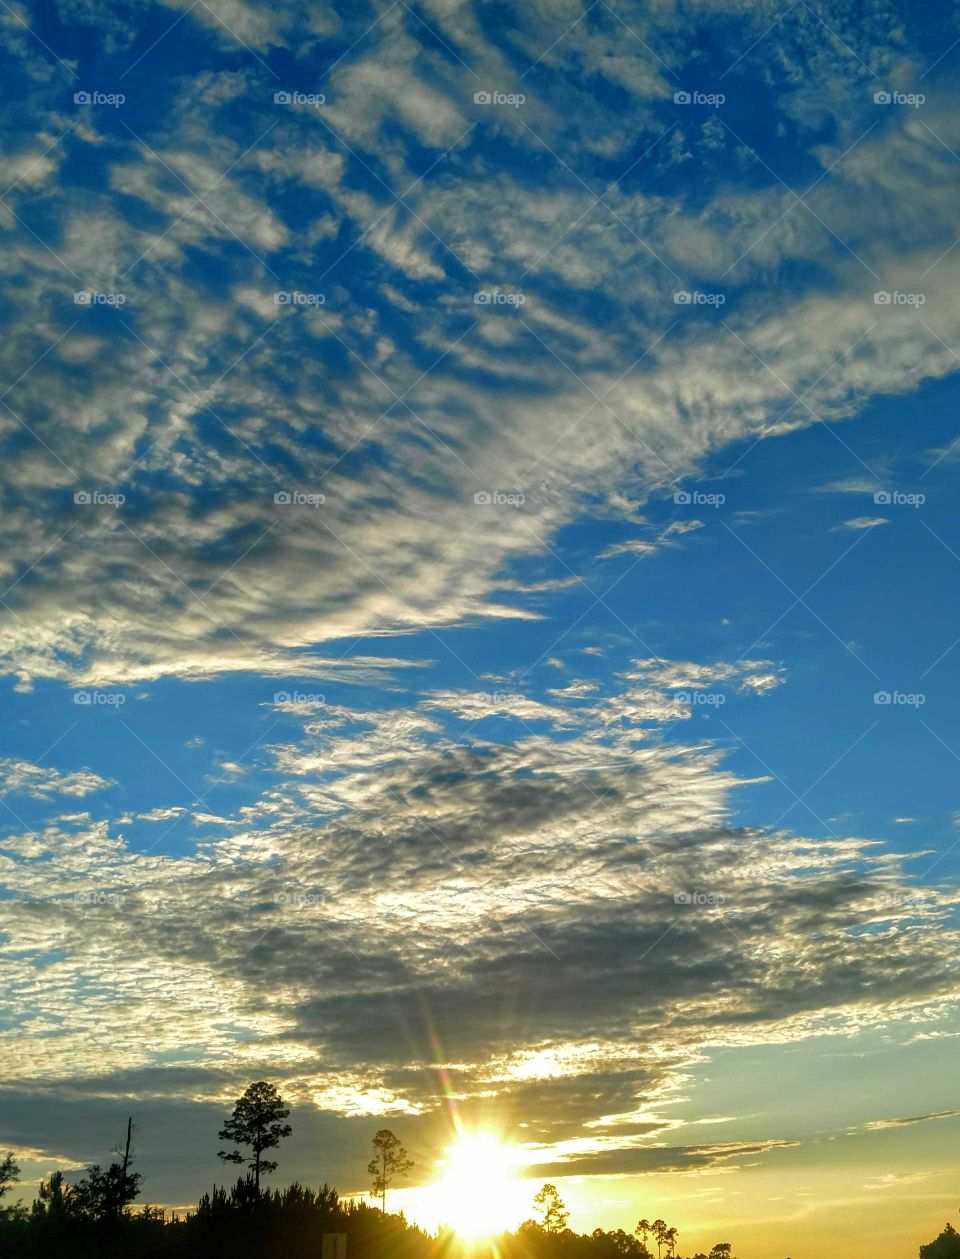 beautiful Florida sunset sky